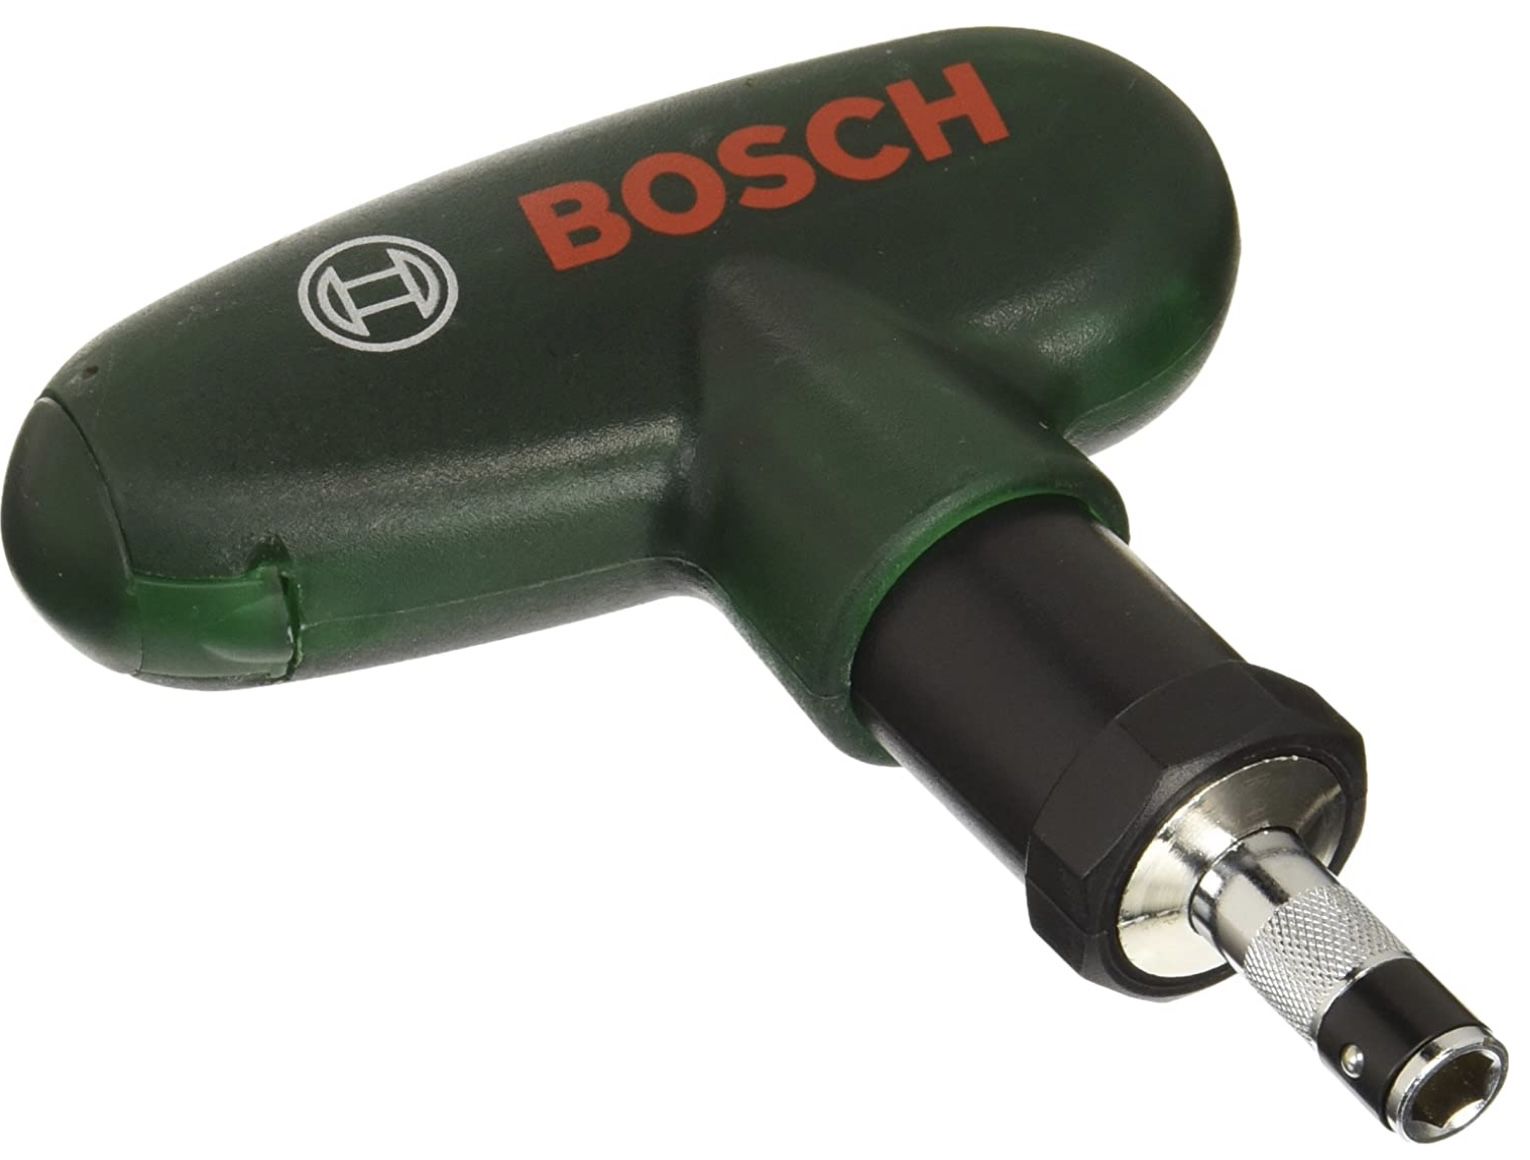 Bosch 10 teiliges Pocket Schrauberbit Set für 9€ (statt 13€)